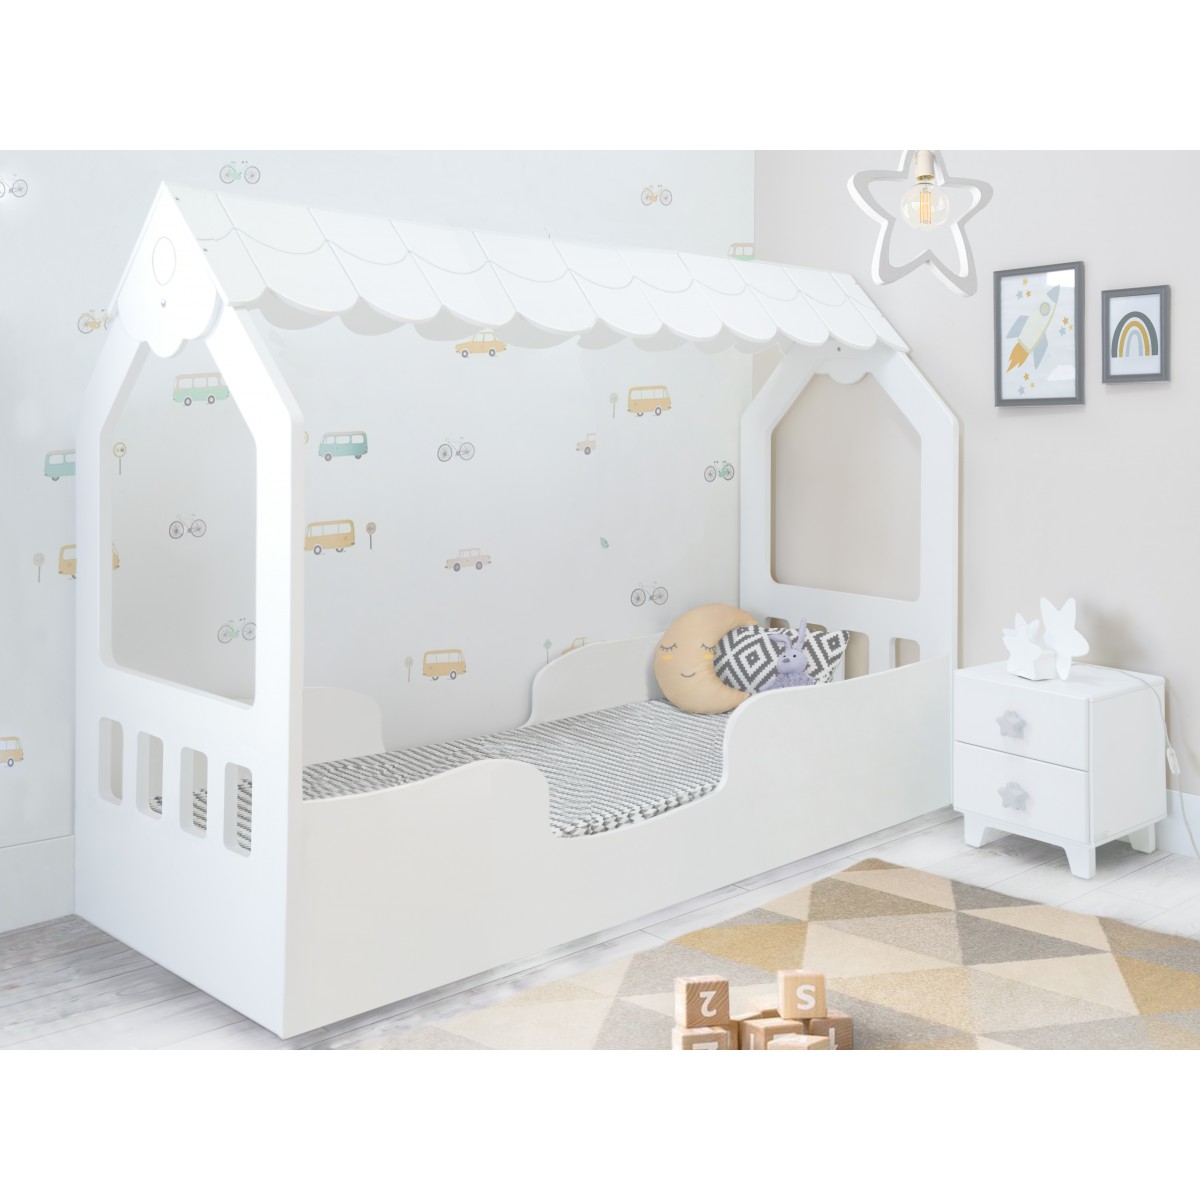 Husty Lettino montessori letto per bambini casetta in legno 80x160cm